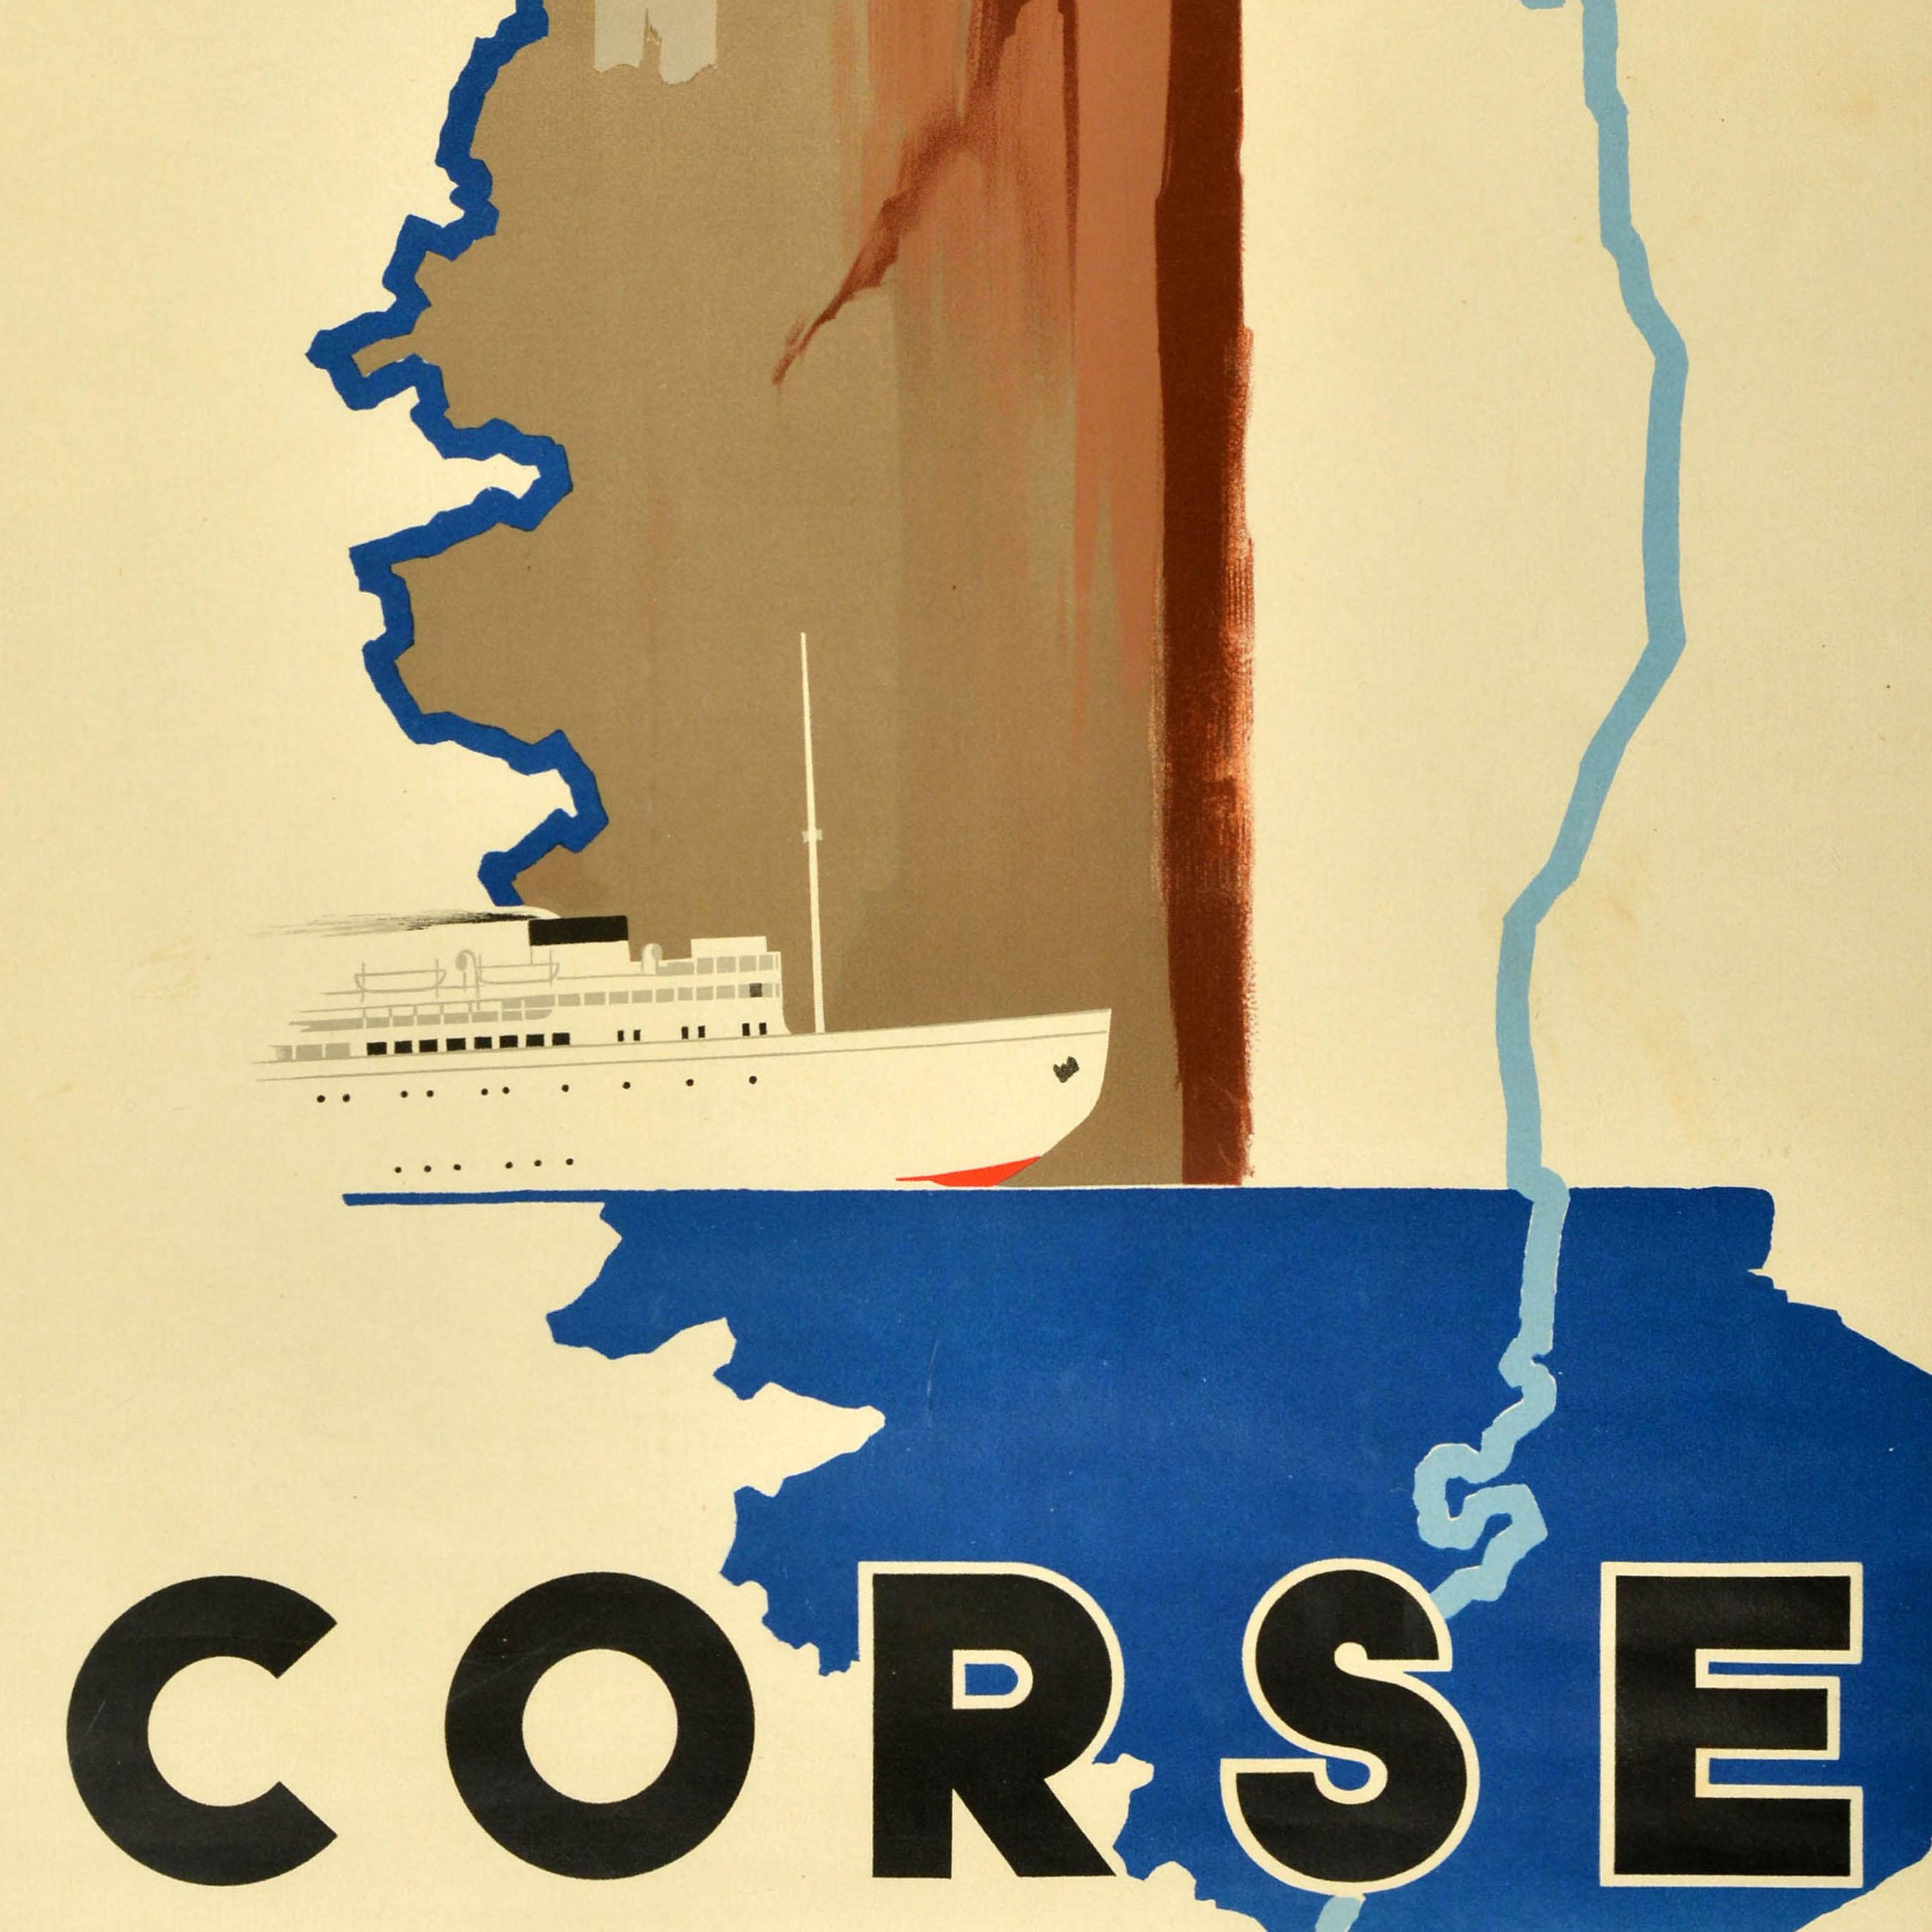 Affiche originale de voyage en train pour la Corse émise par la Société Nationale des Chemins de Fer Français (SNCF ; fondée en 1938) représentant un contour de l'île et un bateau sous une falaise rocheuse avec le logo au-dessus et le texte en